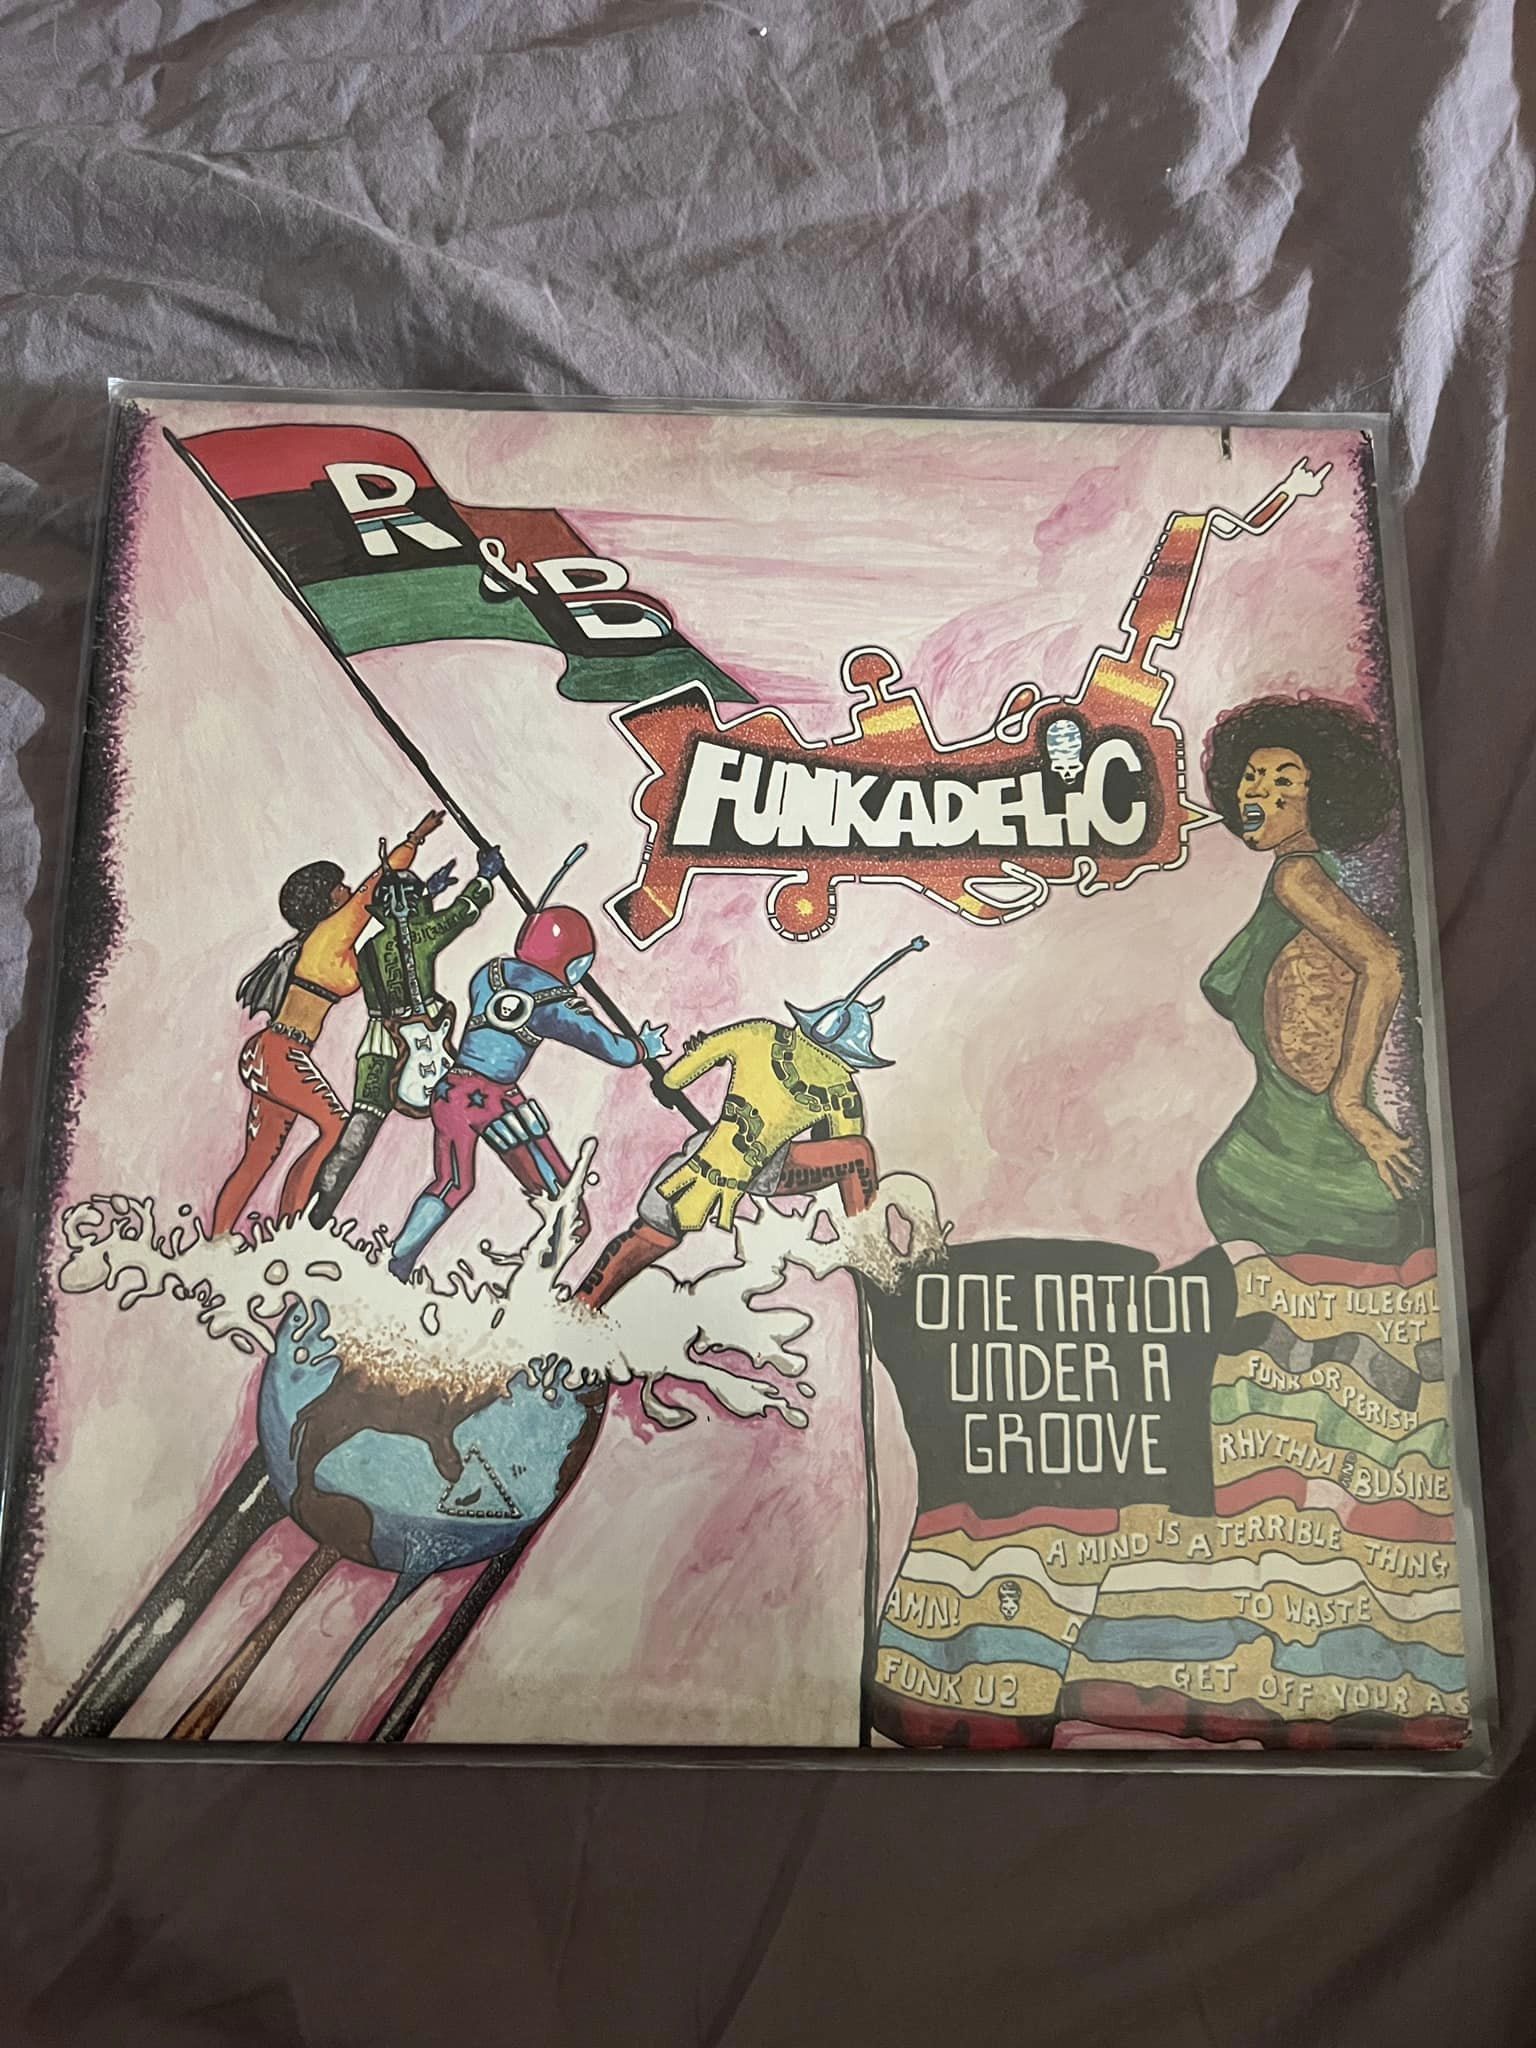 Vendo Lp ed ep dei Funkadelic – One Nation under the groove. Copertina NM- Suppo…